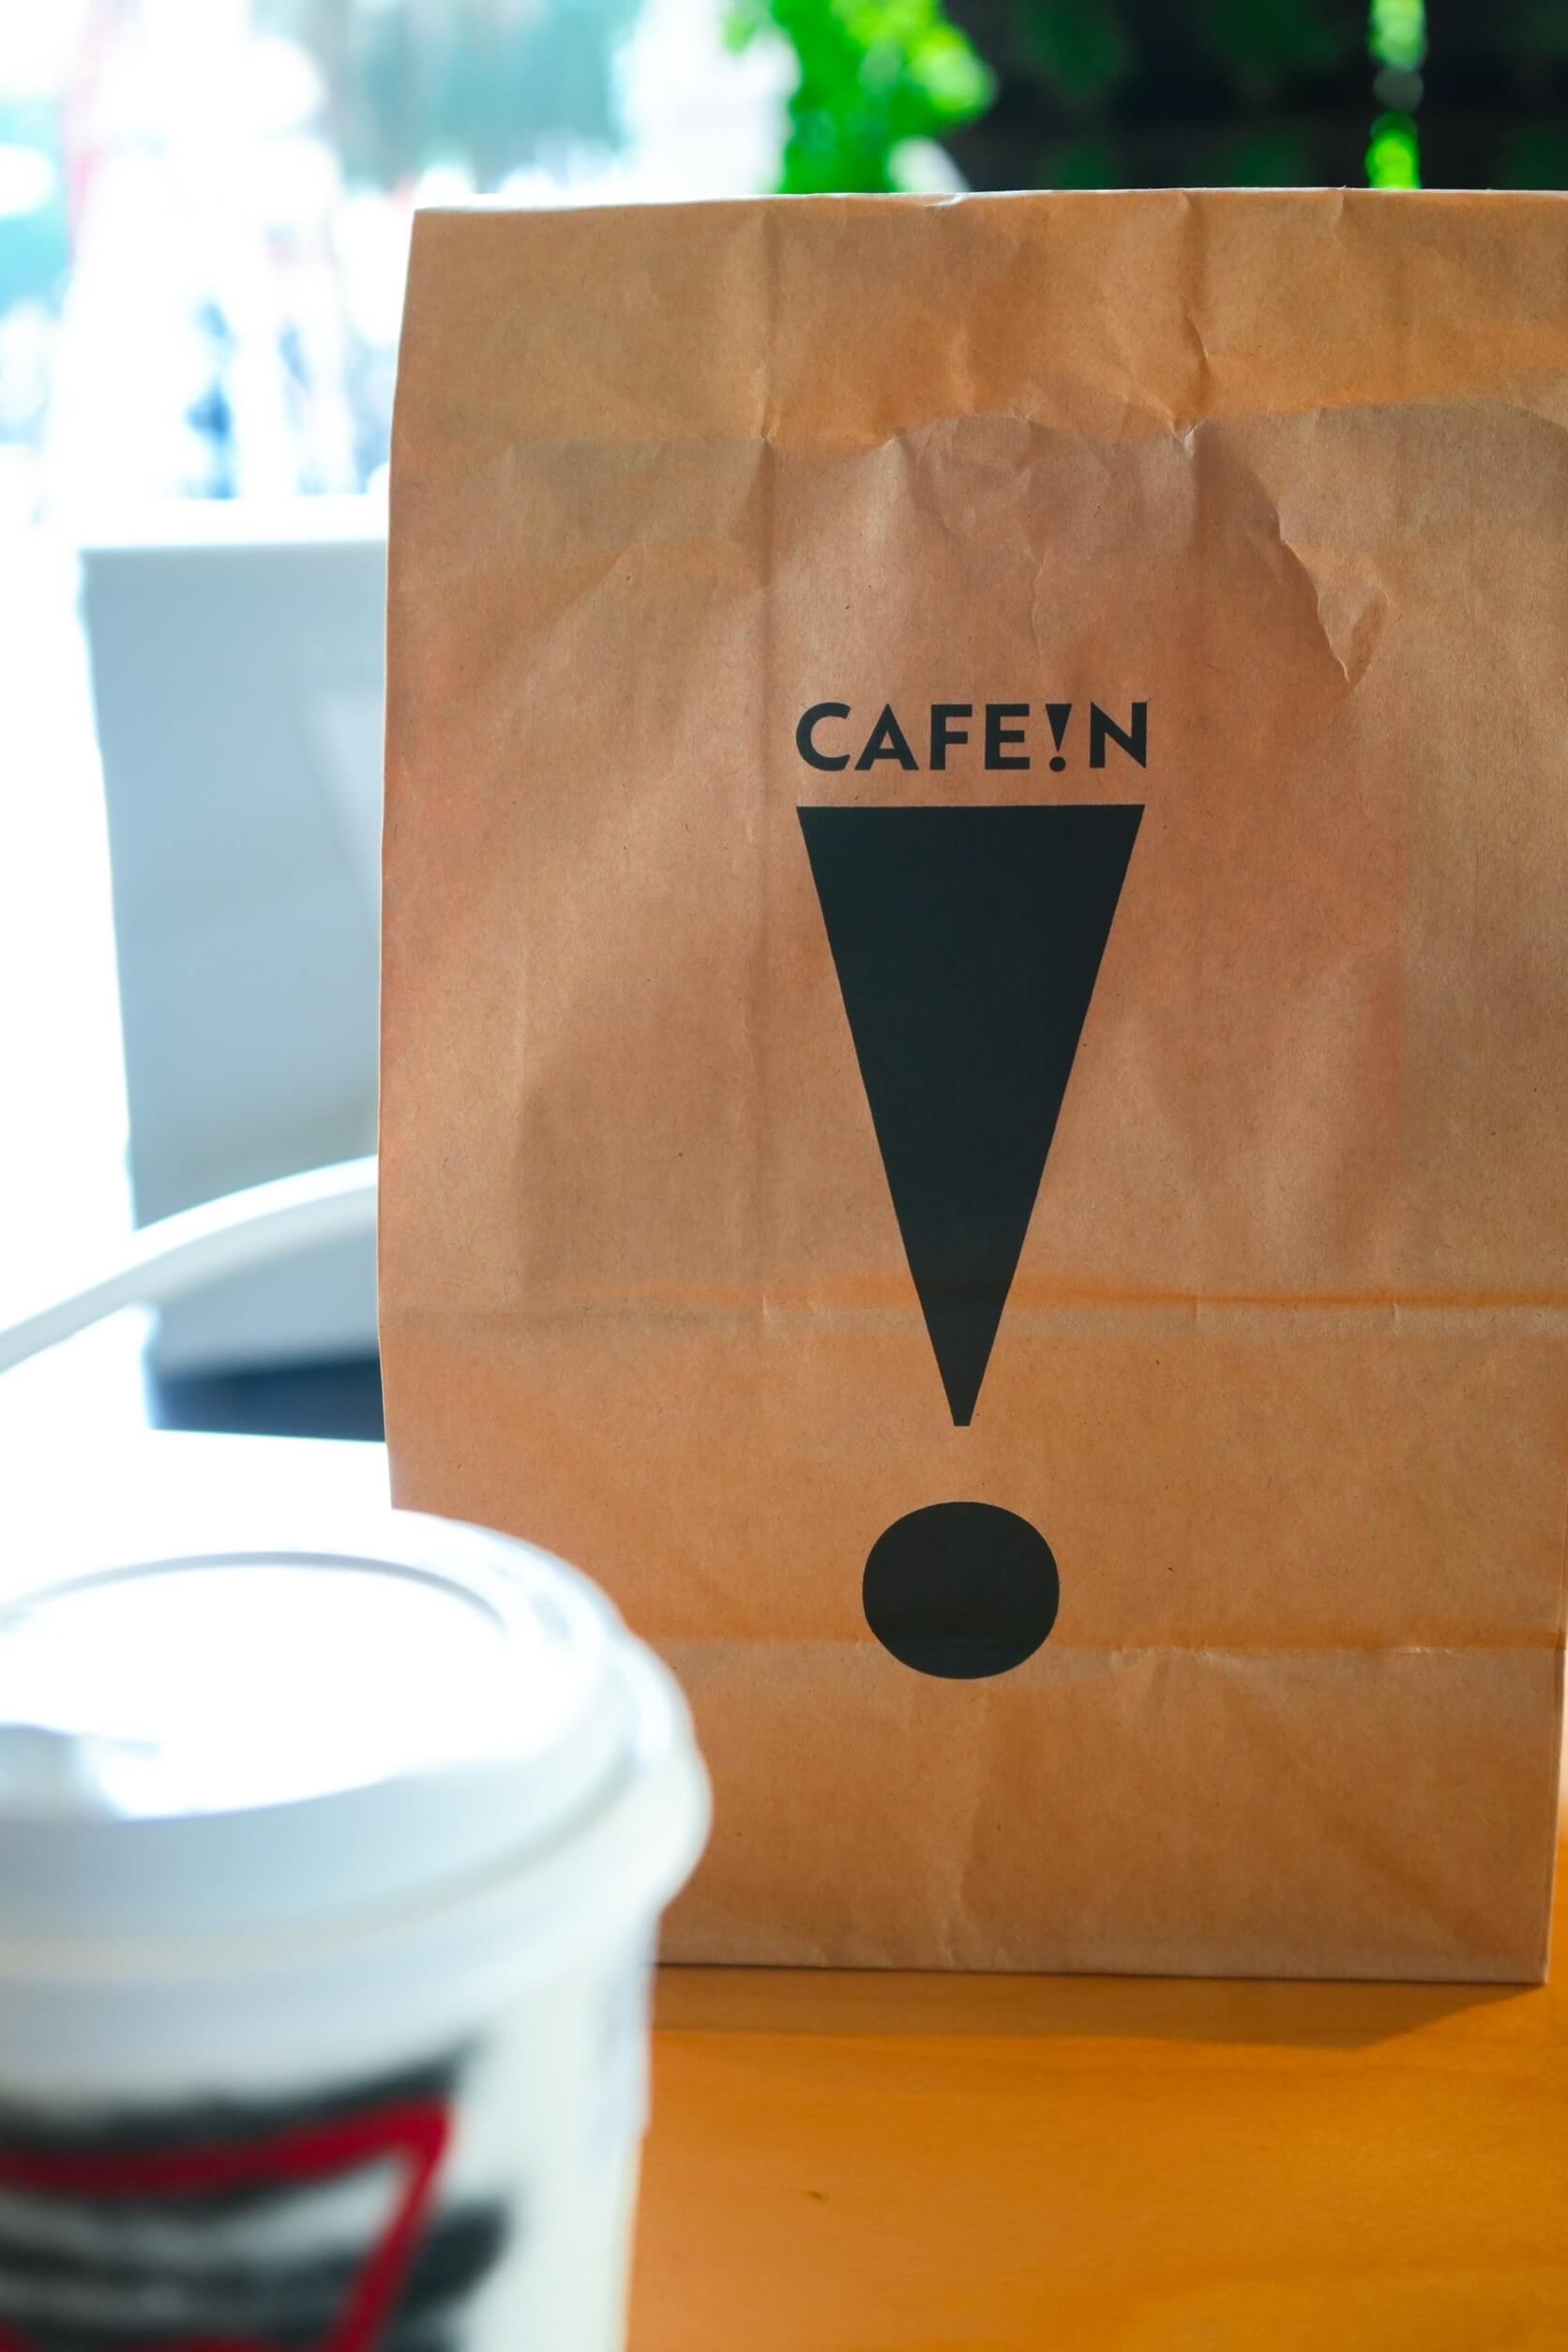 台南驚喜限時快閃【CAFE!N 硬咖啡】讓我們一起登上CAFE!N的咖啡之島